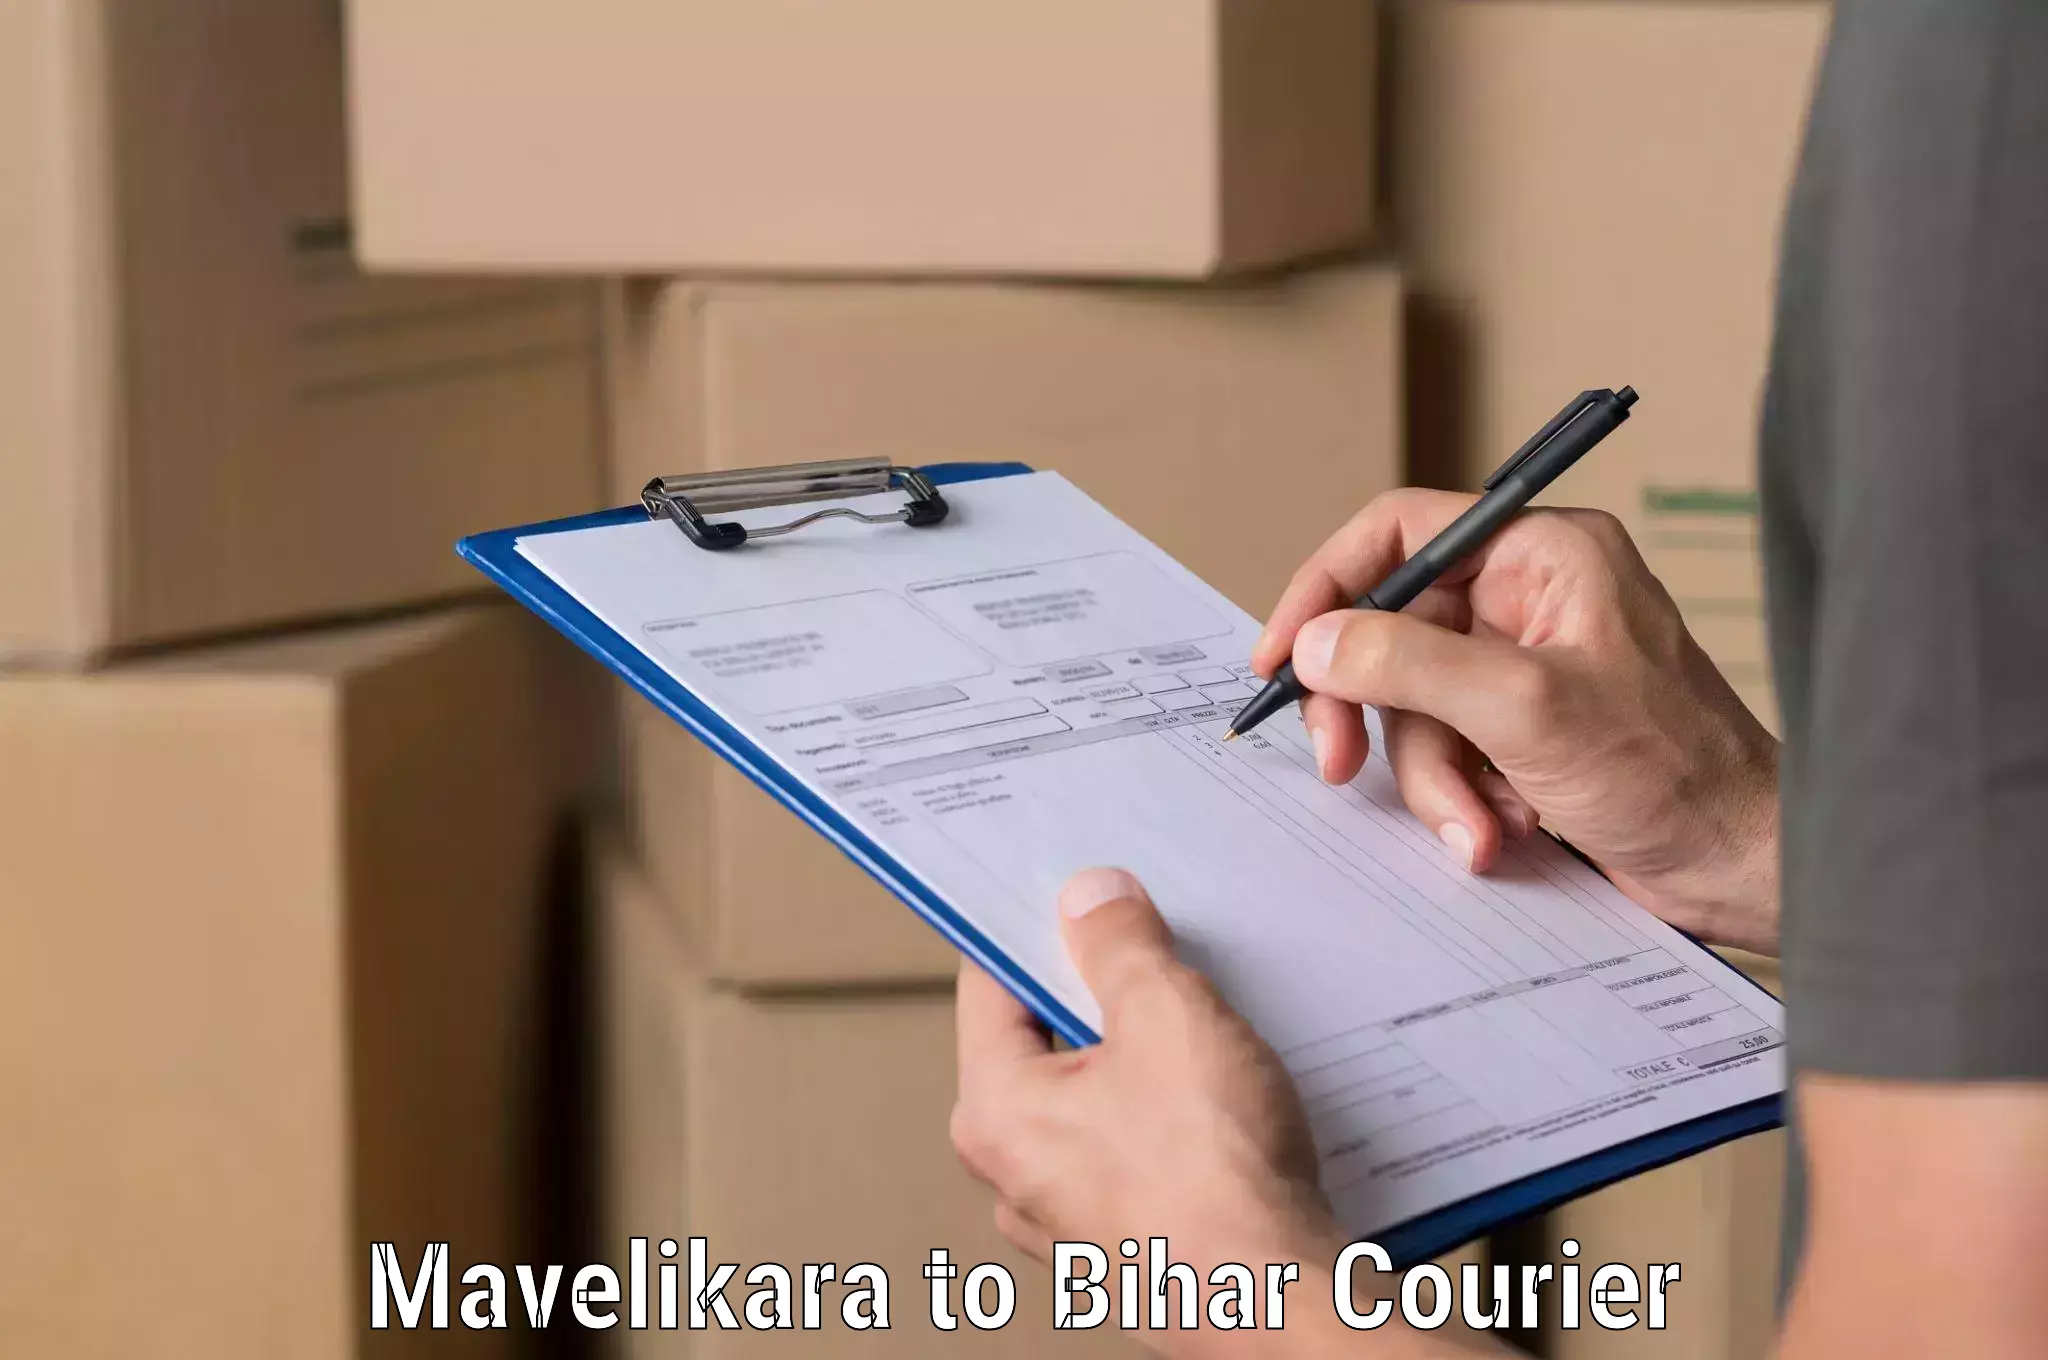 24-hour delivery options Mavelikara to Rajgir